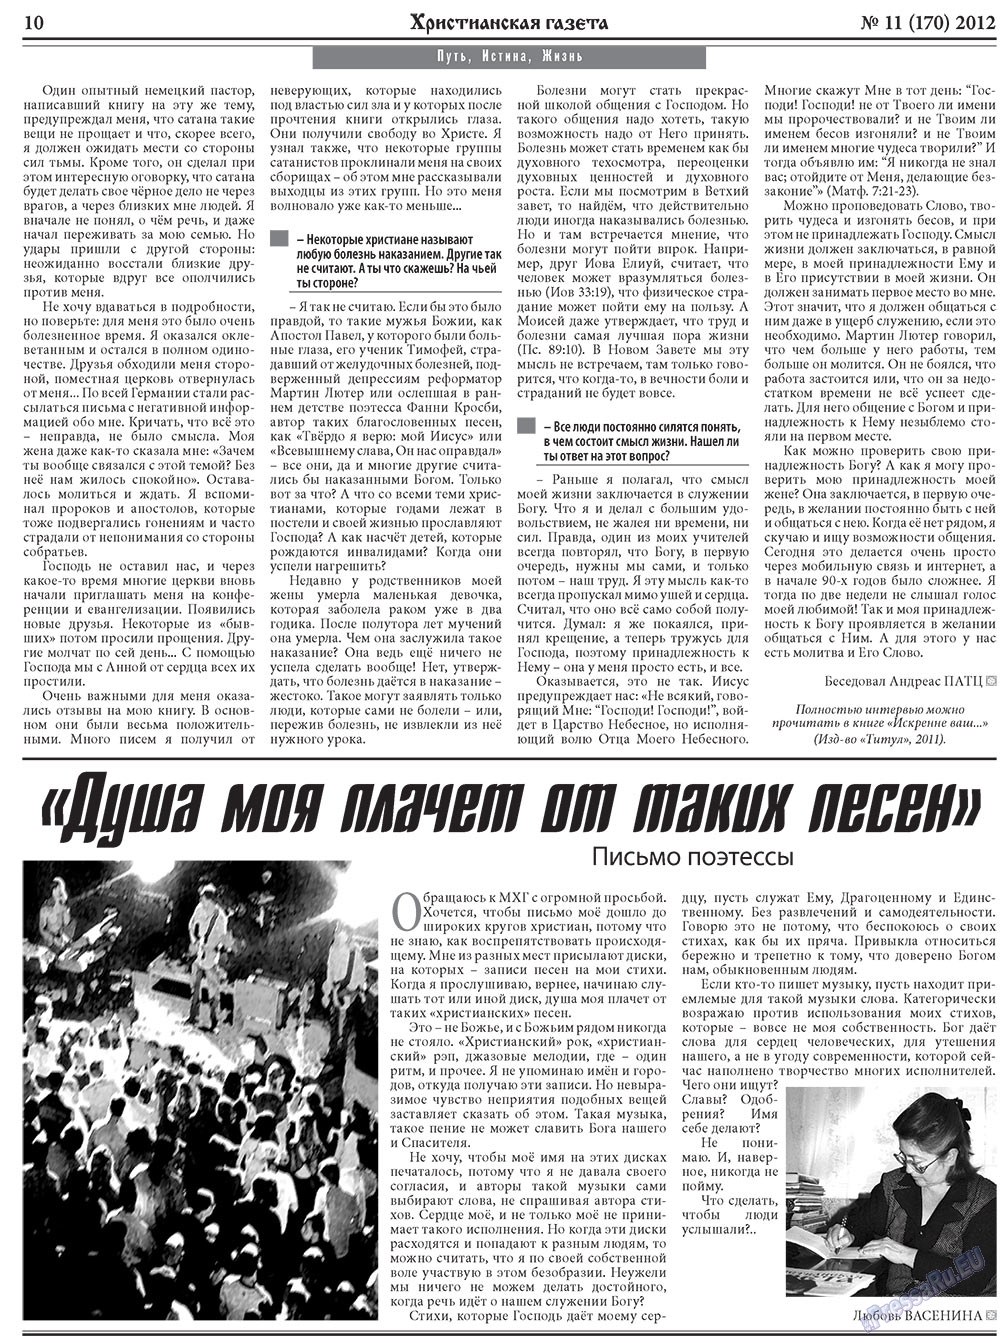 Христианская газета, газета. 2012 №11 стр.10